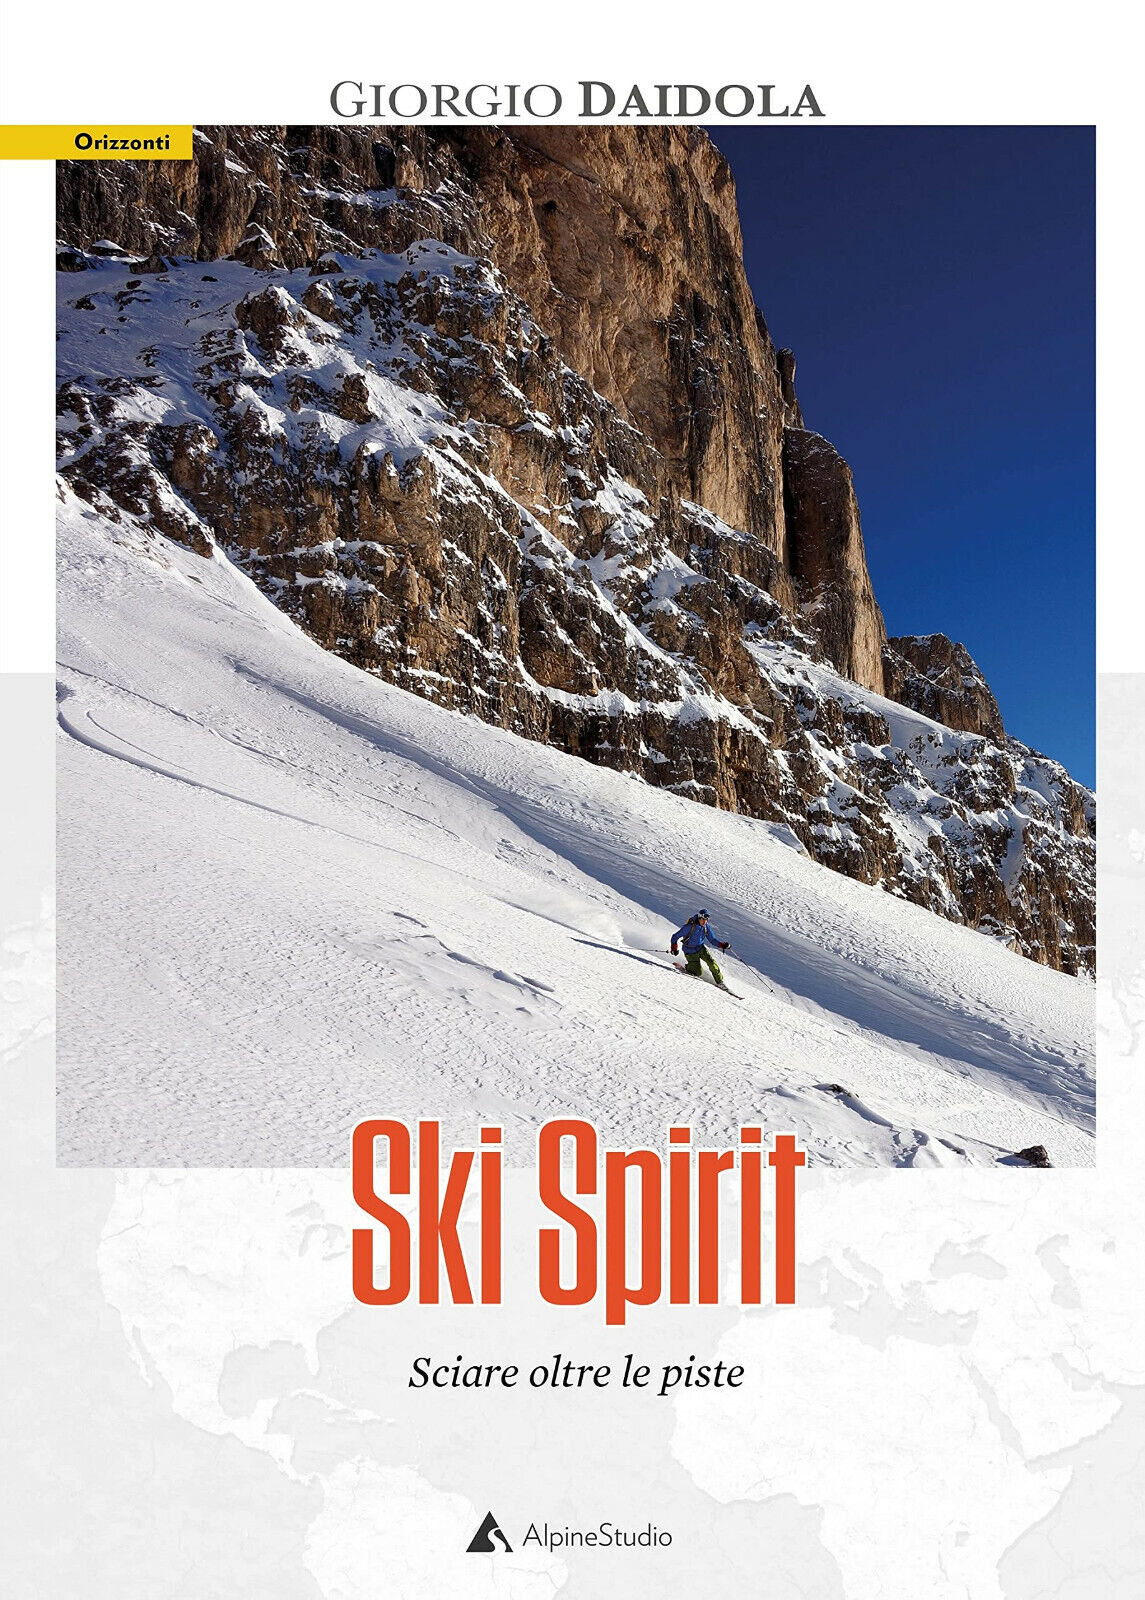 Ski spirit. Sciare oltre le piste - Giorgio Daidola - Alpine Studio, 2021 libro usato